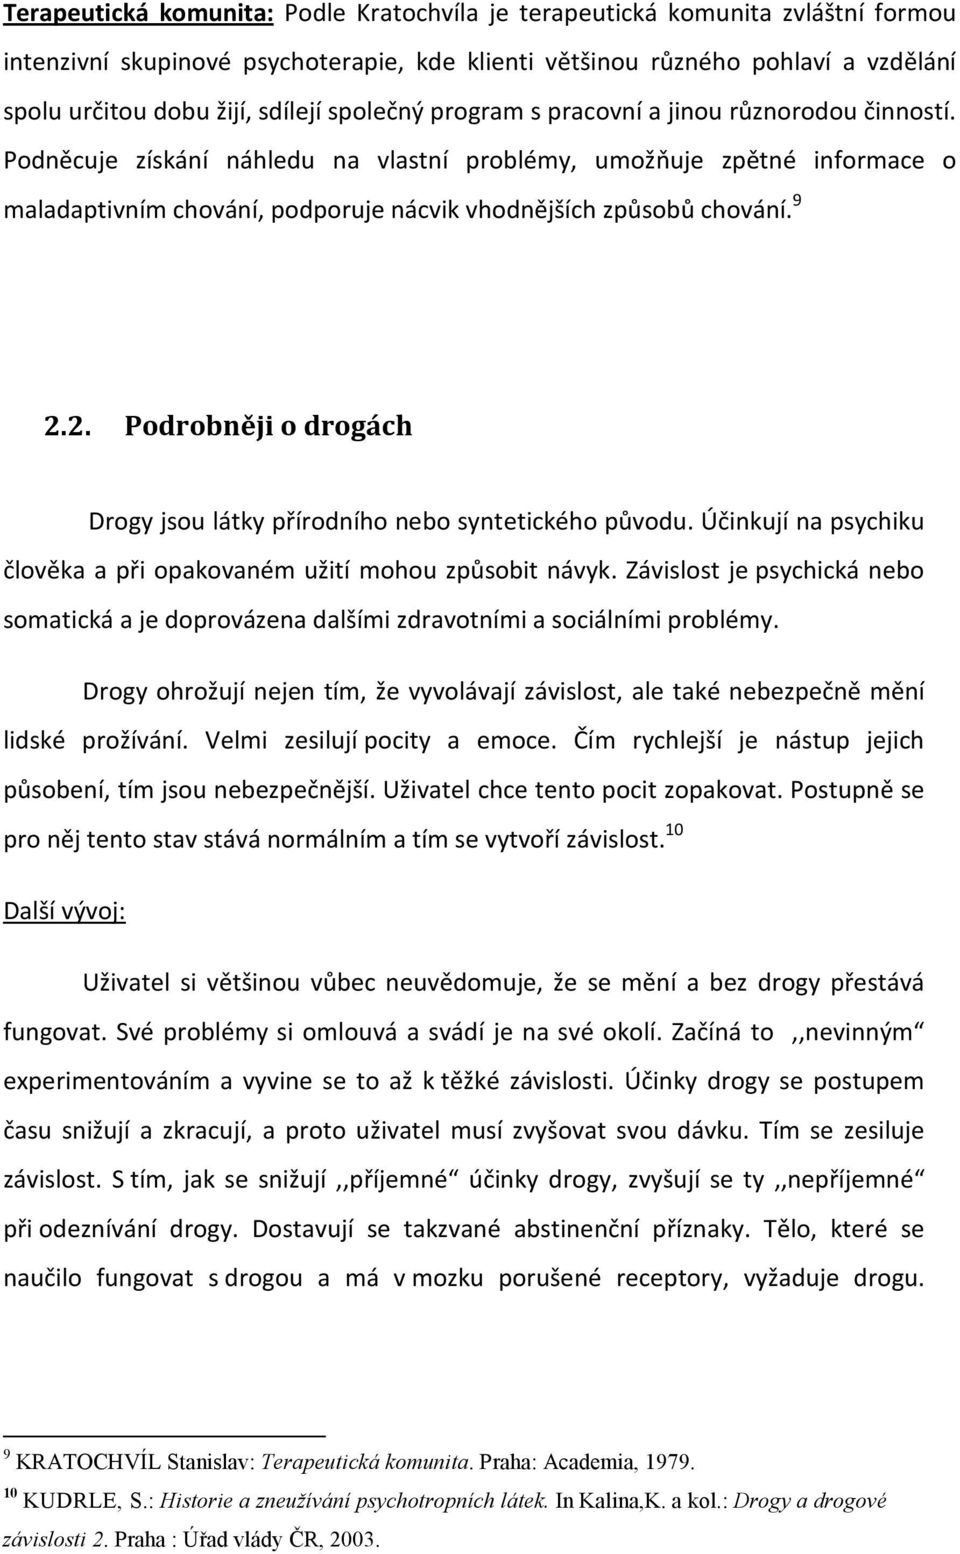 9 2.2. Podrobněji o drogách Drogy jsou látky přírodního nebo syntetického původu. Účinkují na psychiku člověka a při opakovaném užití mohou způsobit návyk.